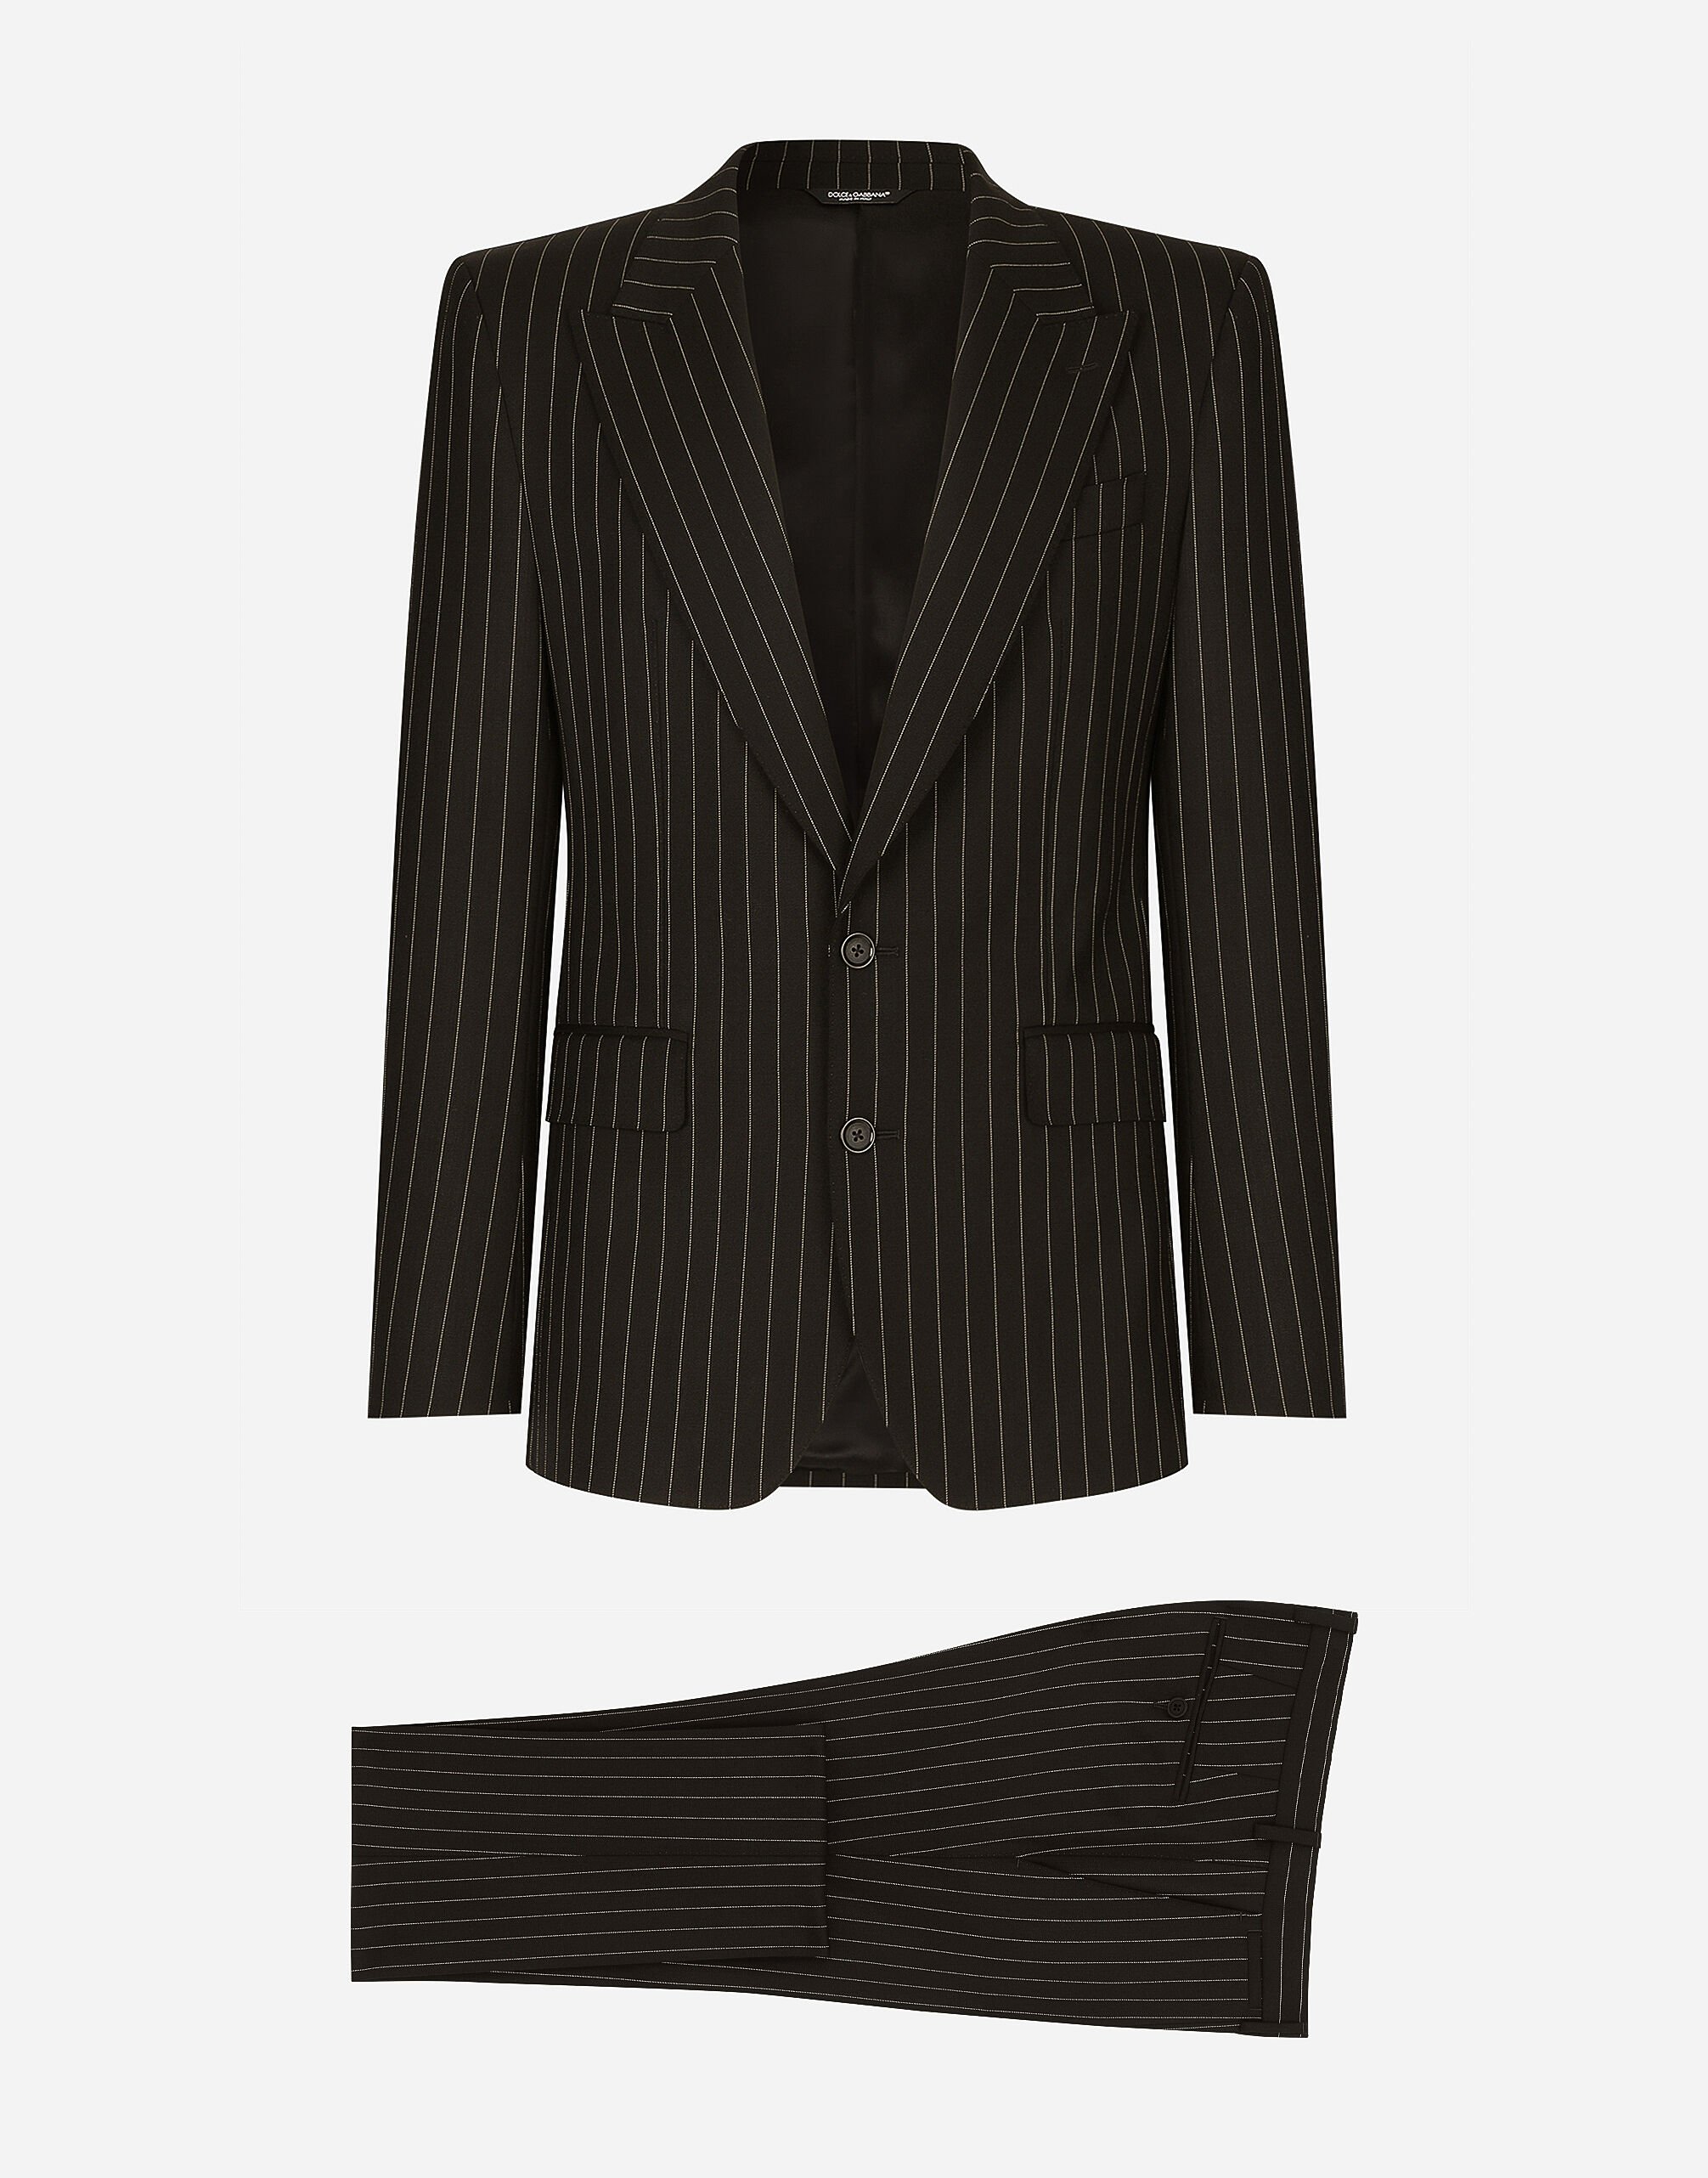 Dolce & Gabbana Traje Sicilia de botonadura sencilla en lana elástica con rayas diplomáticas Negro G2RQ2TGF815